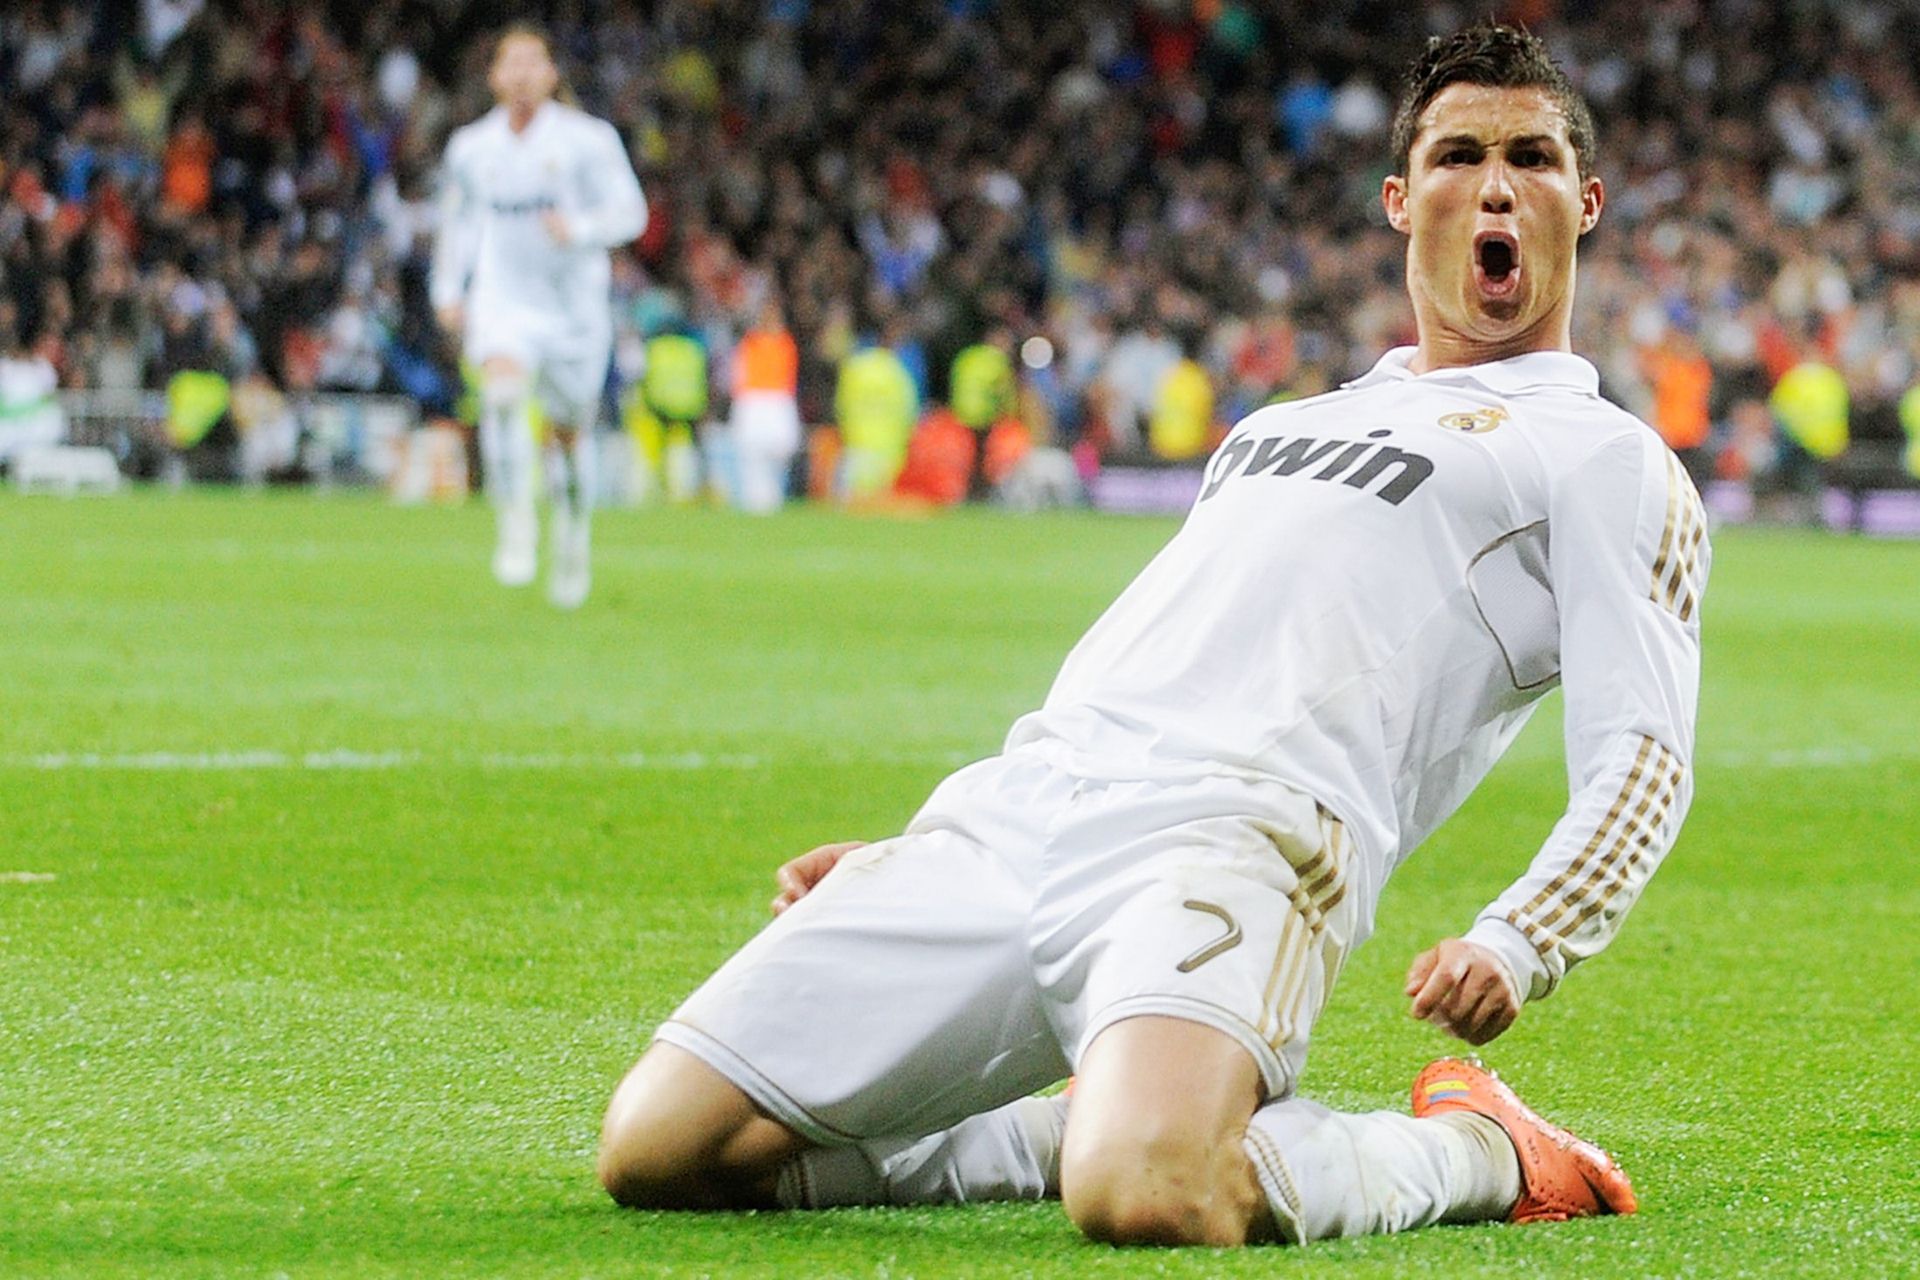 Cristiano Ronaldo Scores A Goal - HD Wallpaper 